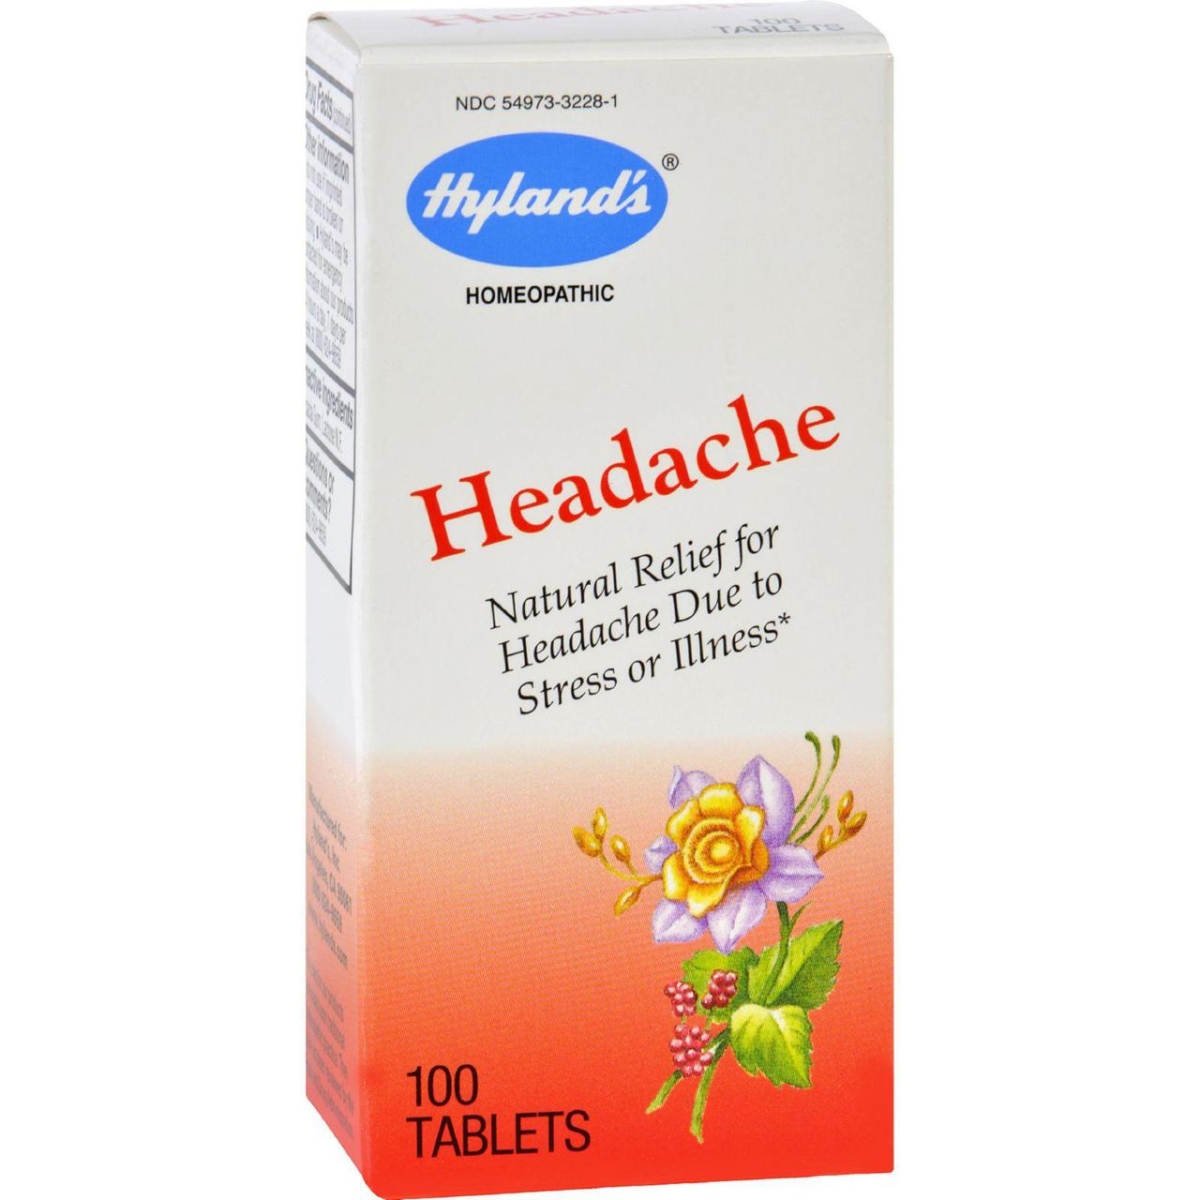 Hg1720259 Homeopathic Headache - 100 Tablets